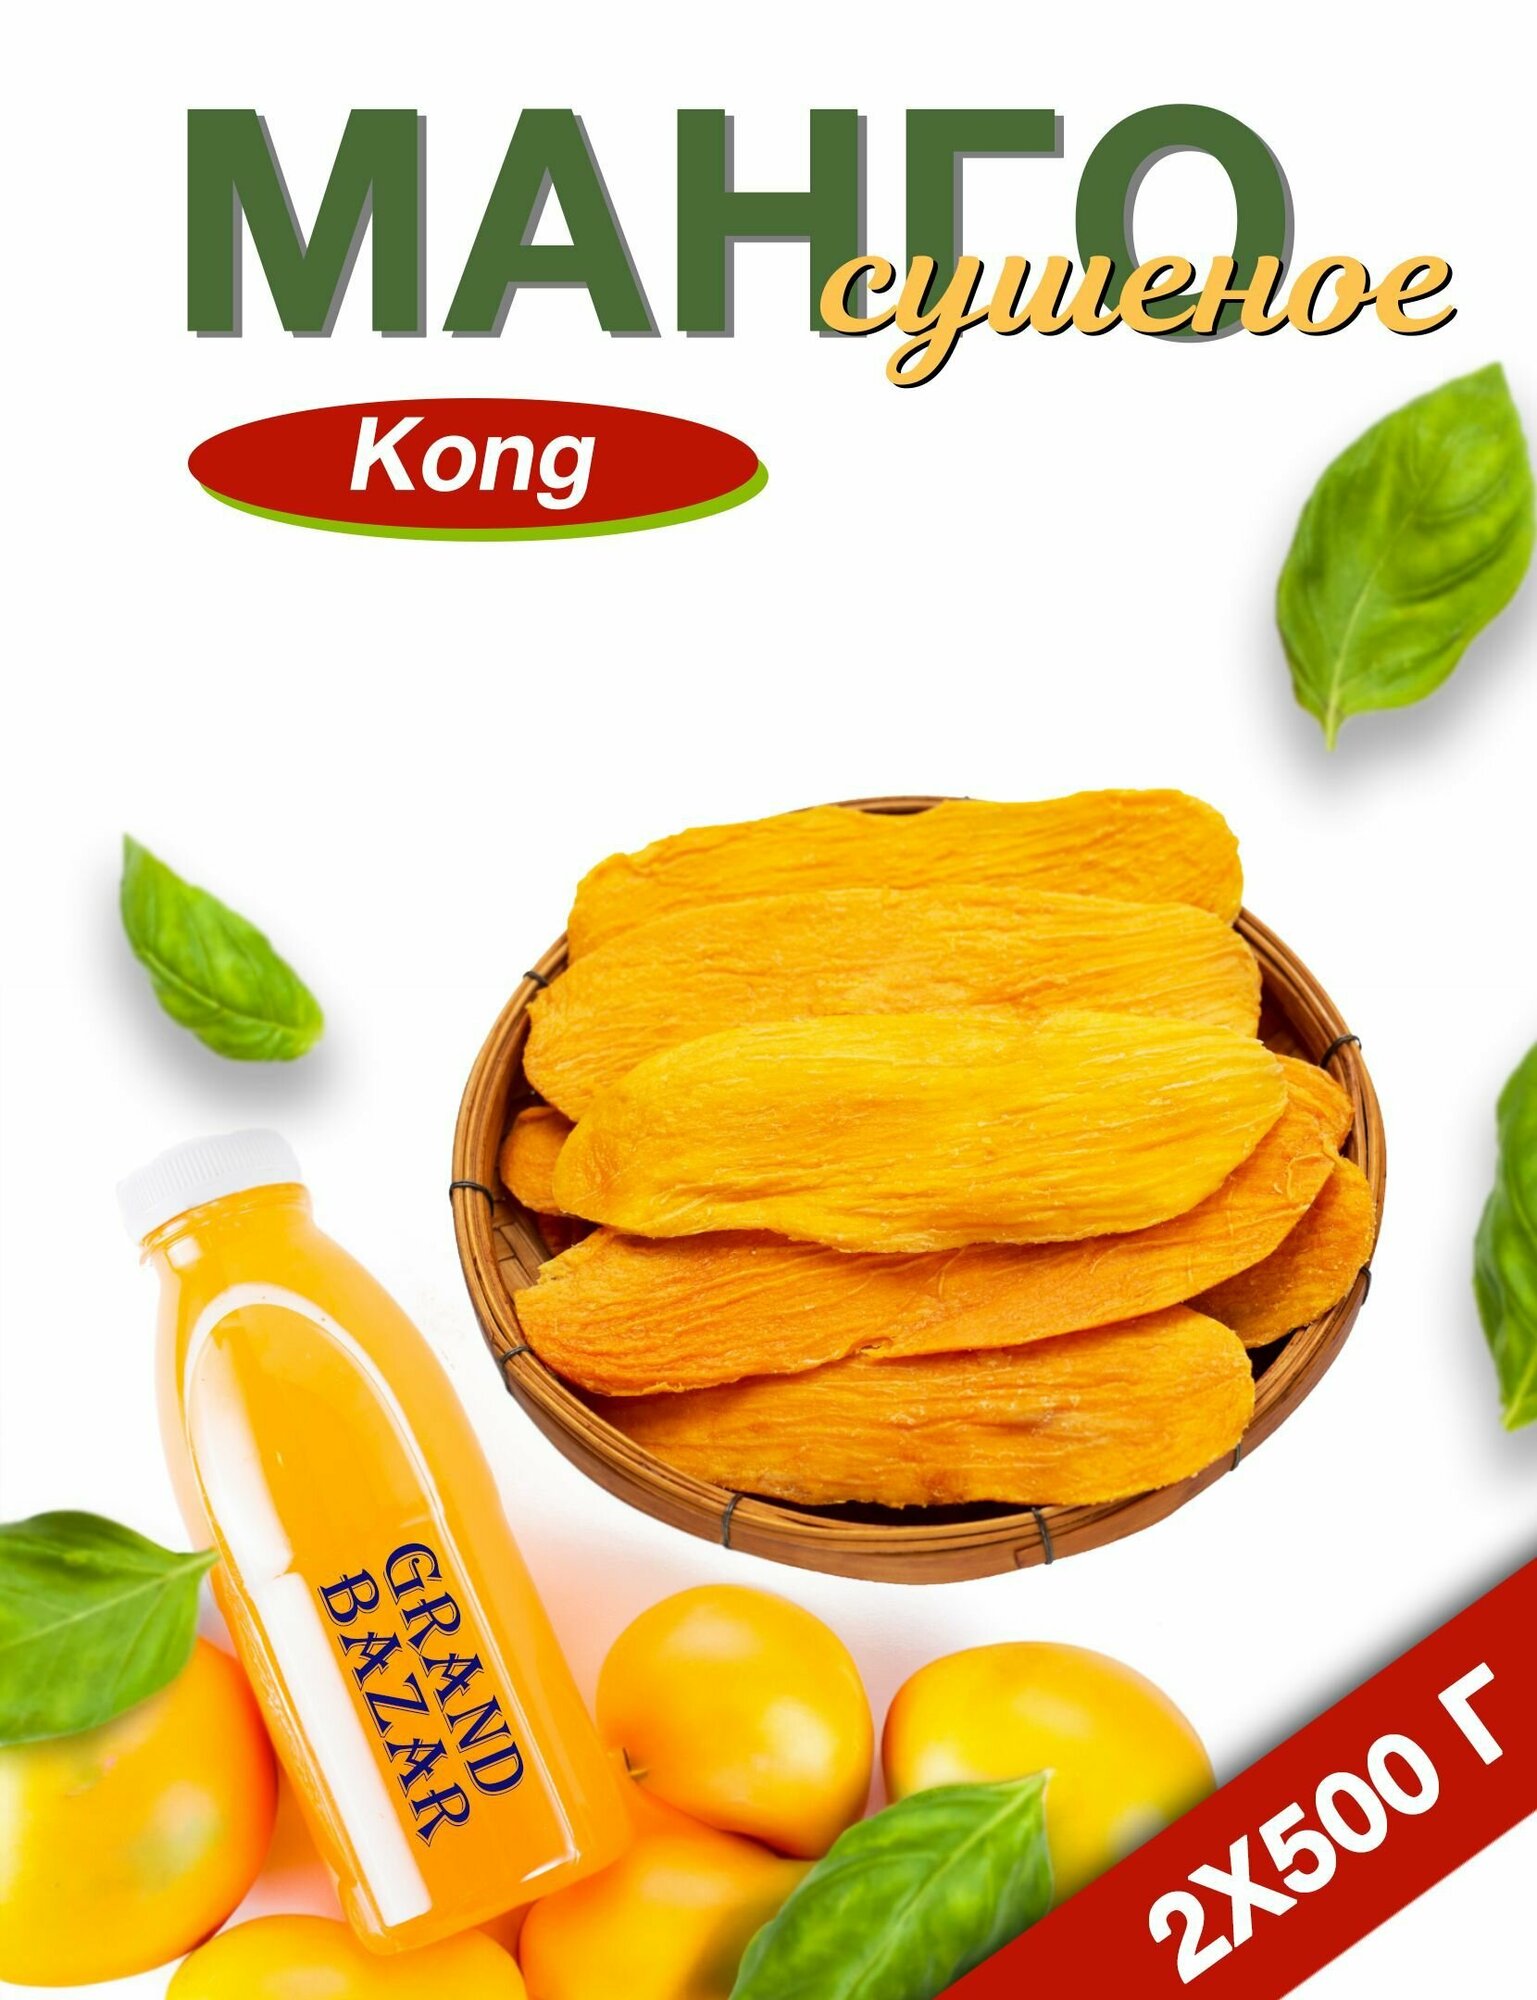 Манго сушеное Конг (Kong)100% натуральное, упаковка 2 по 500гр, 1кг - фотография № 2